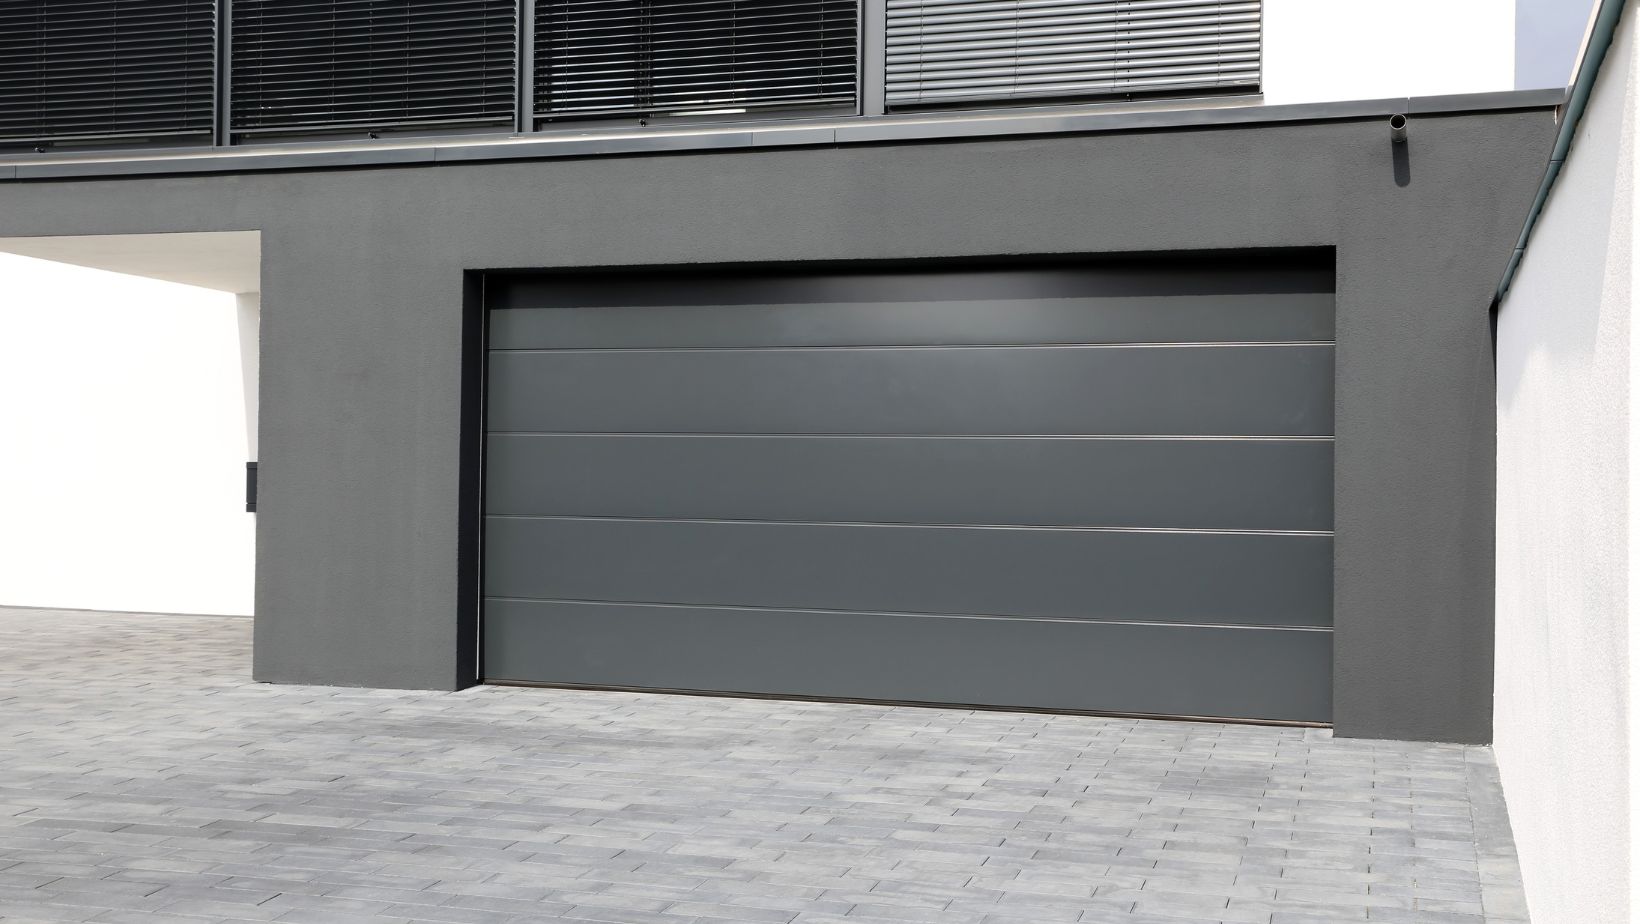 surge protector for garage door opener